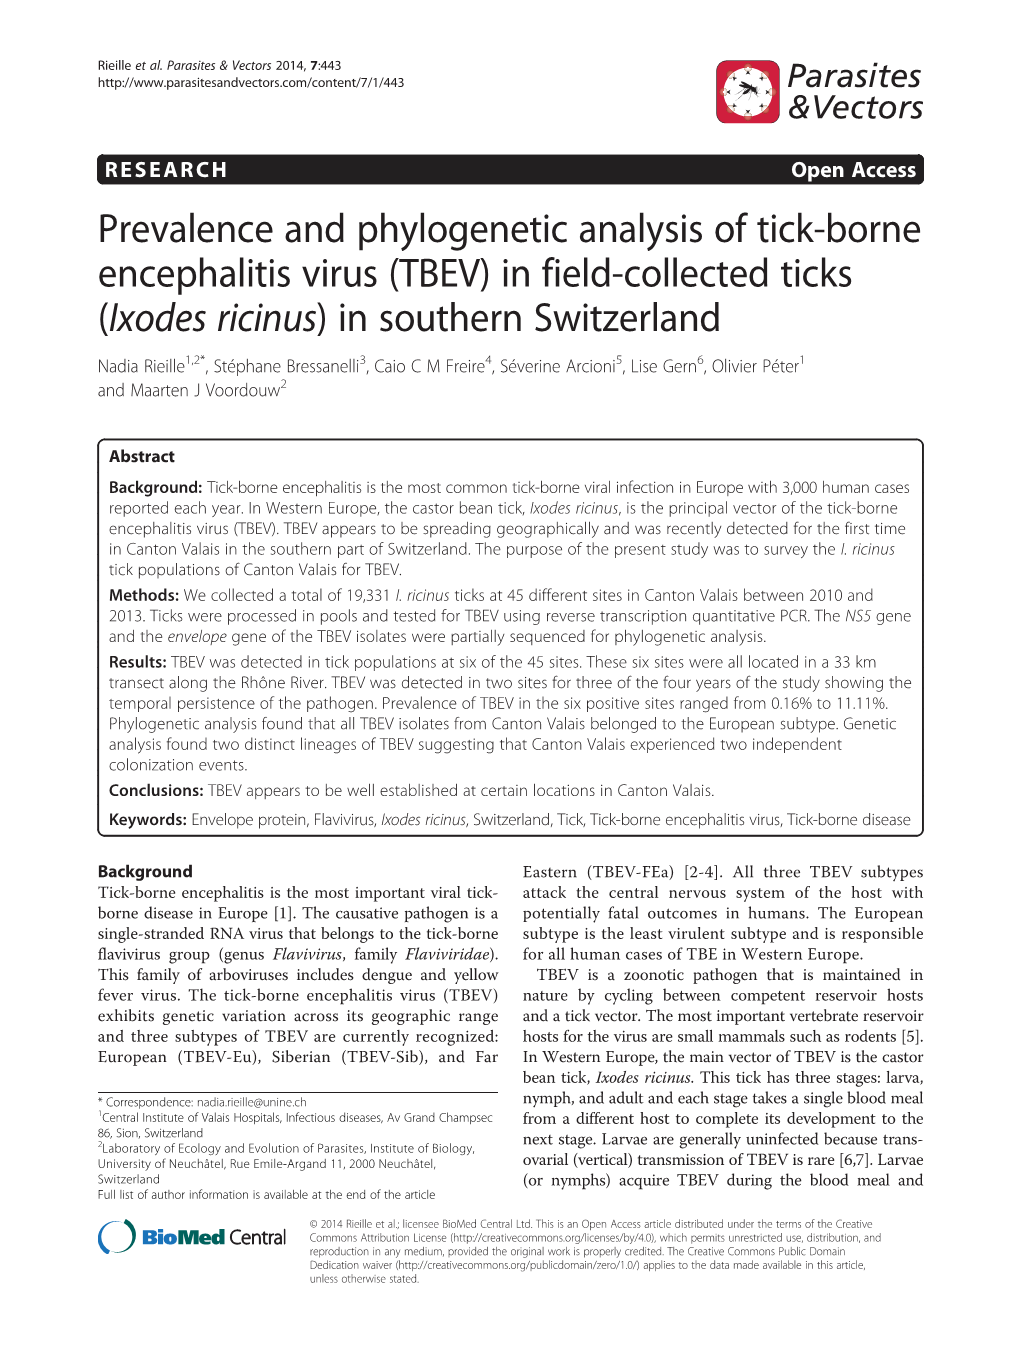 Prevalence and Phylogenetic Analysis of Tick-Borne Encephalitis Virus